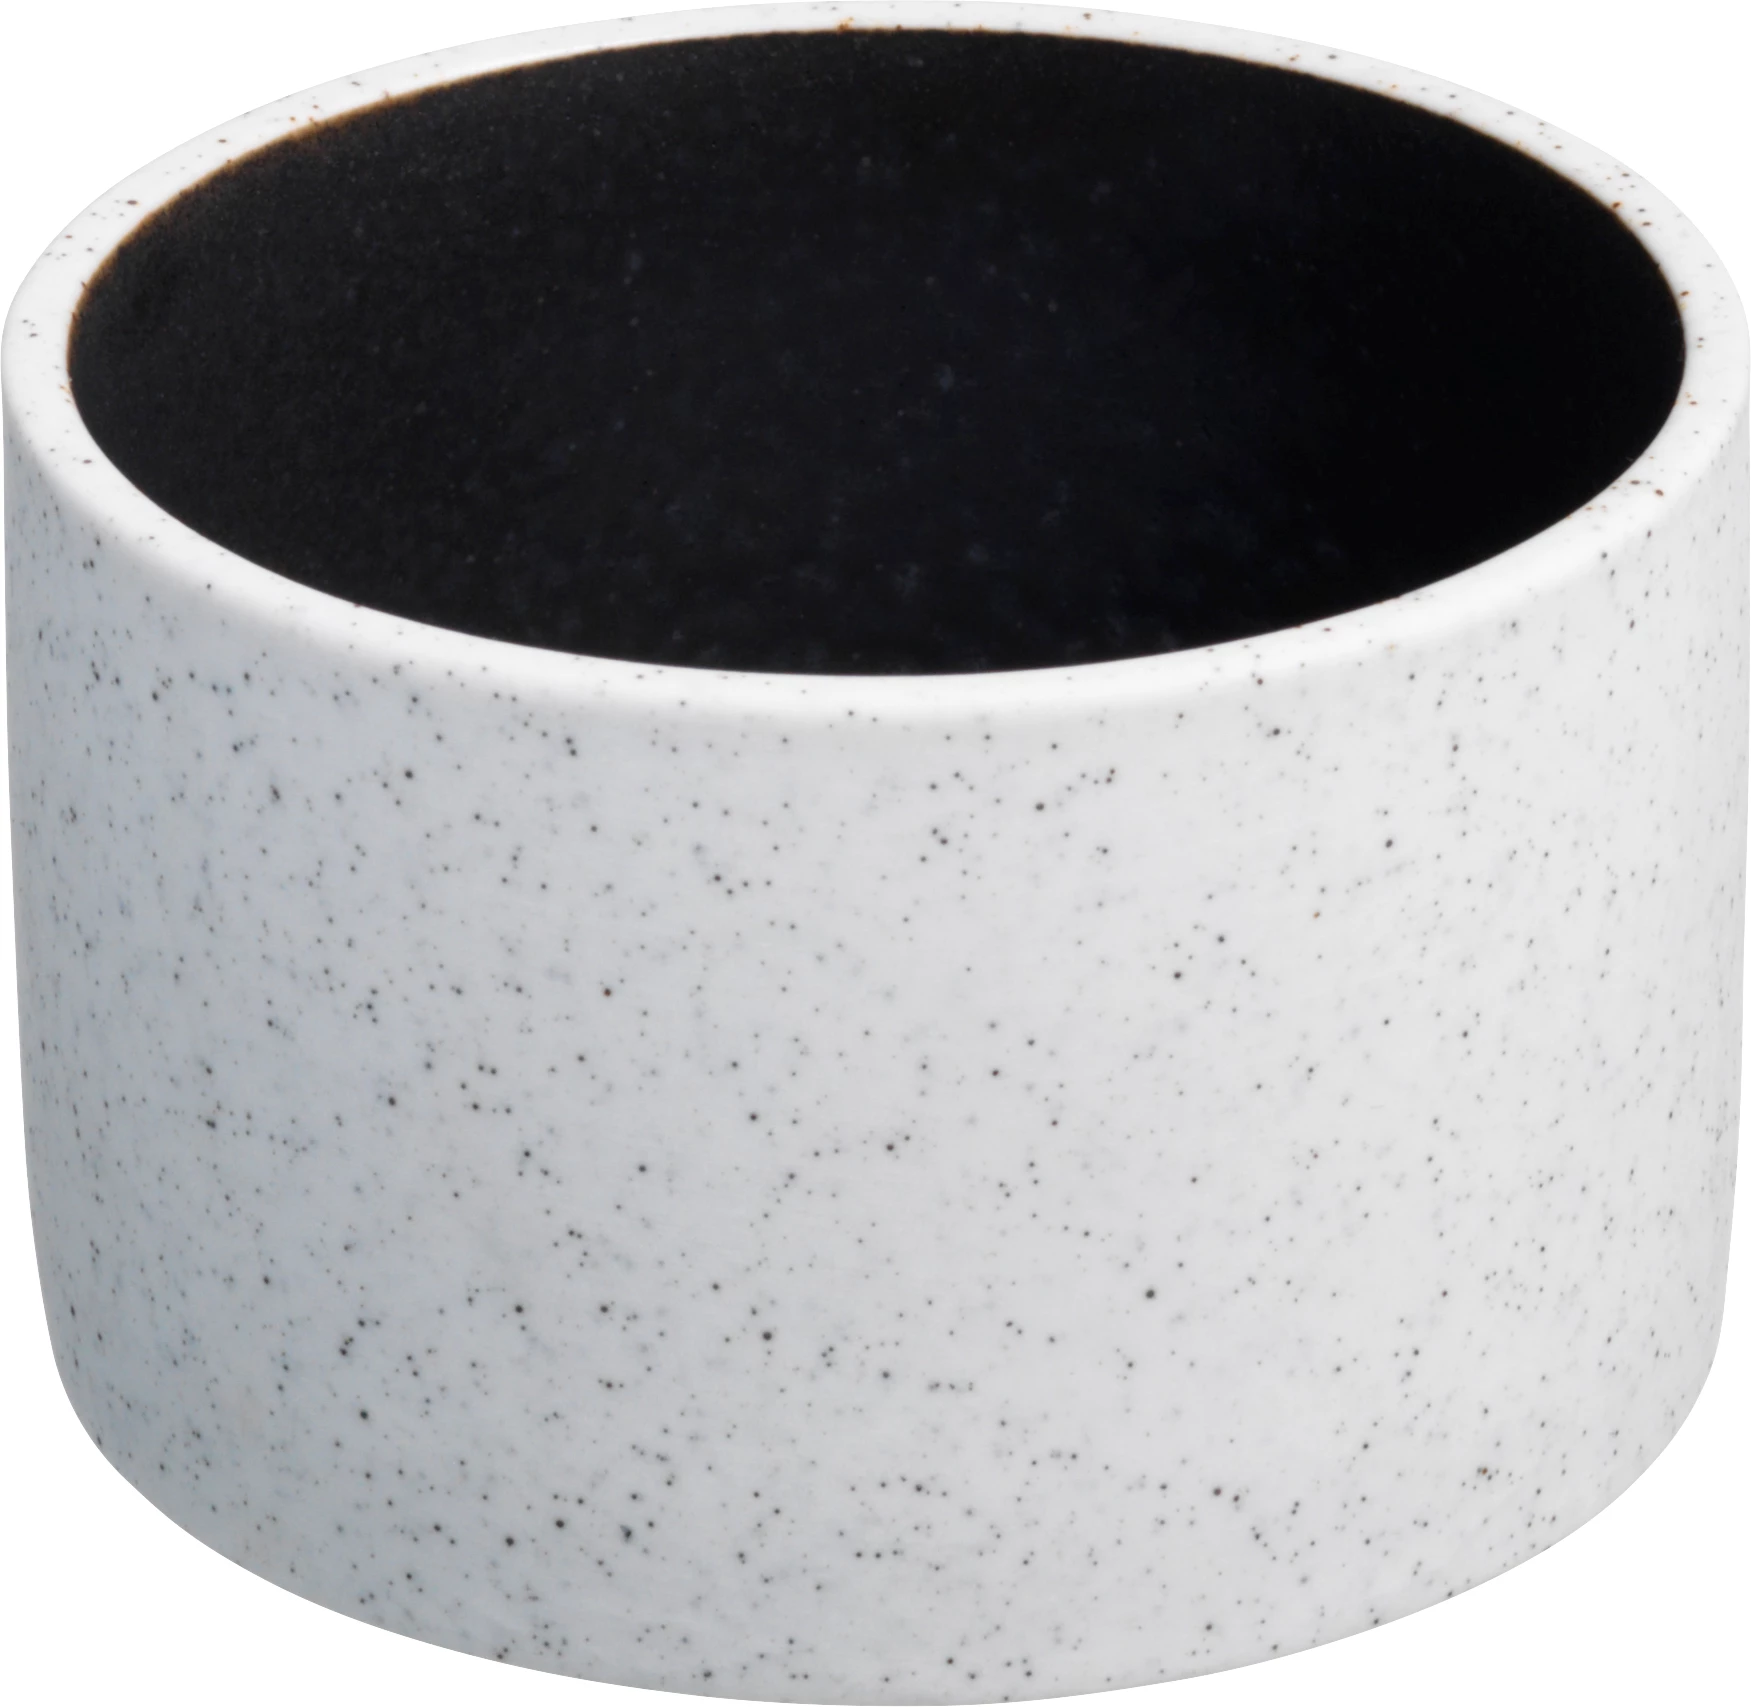 Salt skål, cylinderformet, grå/brun, 15 cl, ø8 cm